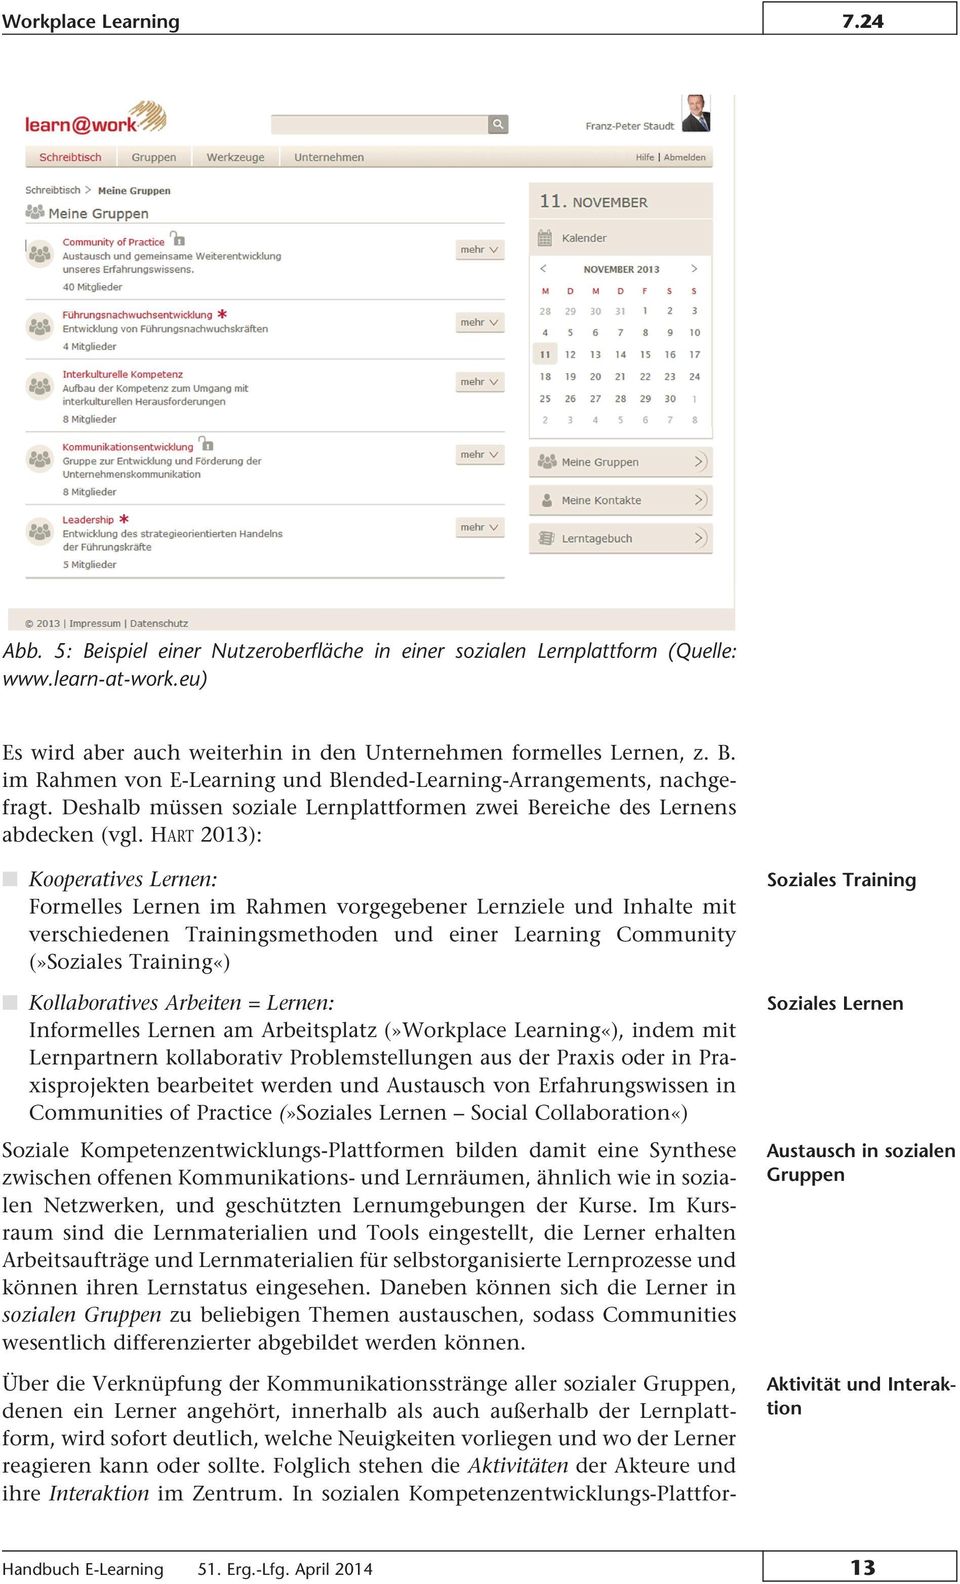 HART 2013): Kooperatives Lernen: Formelles Lernen im Rahmen vorgegebener Lernziele und Inhalte mit verschiedenen Trainingsmethoden und einer Learning Community (»Soziales Training«) Kollaboratives